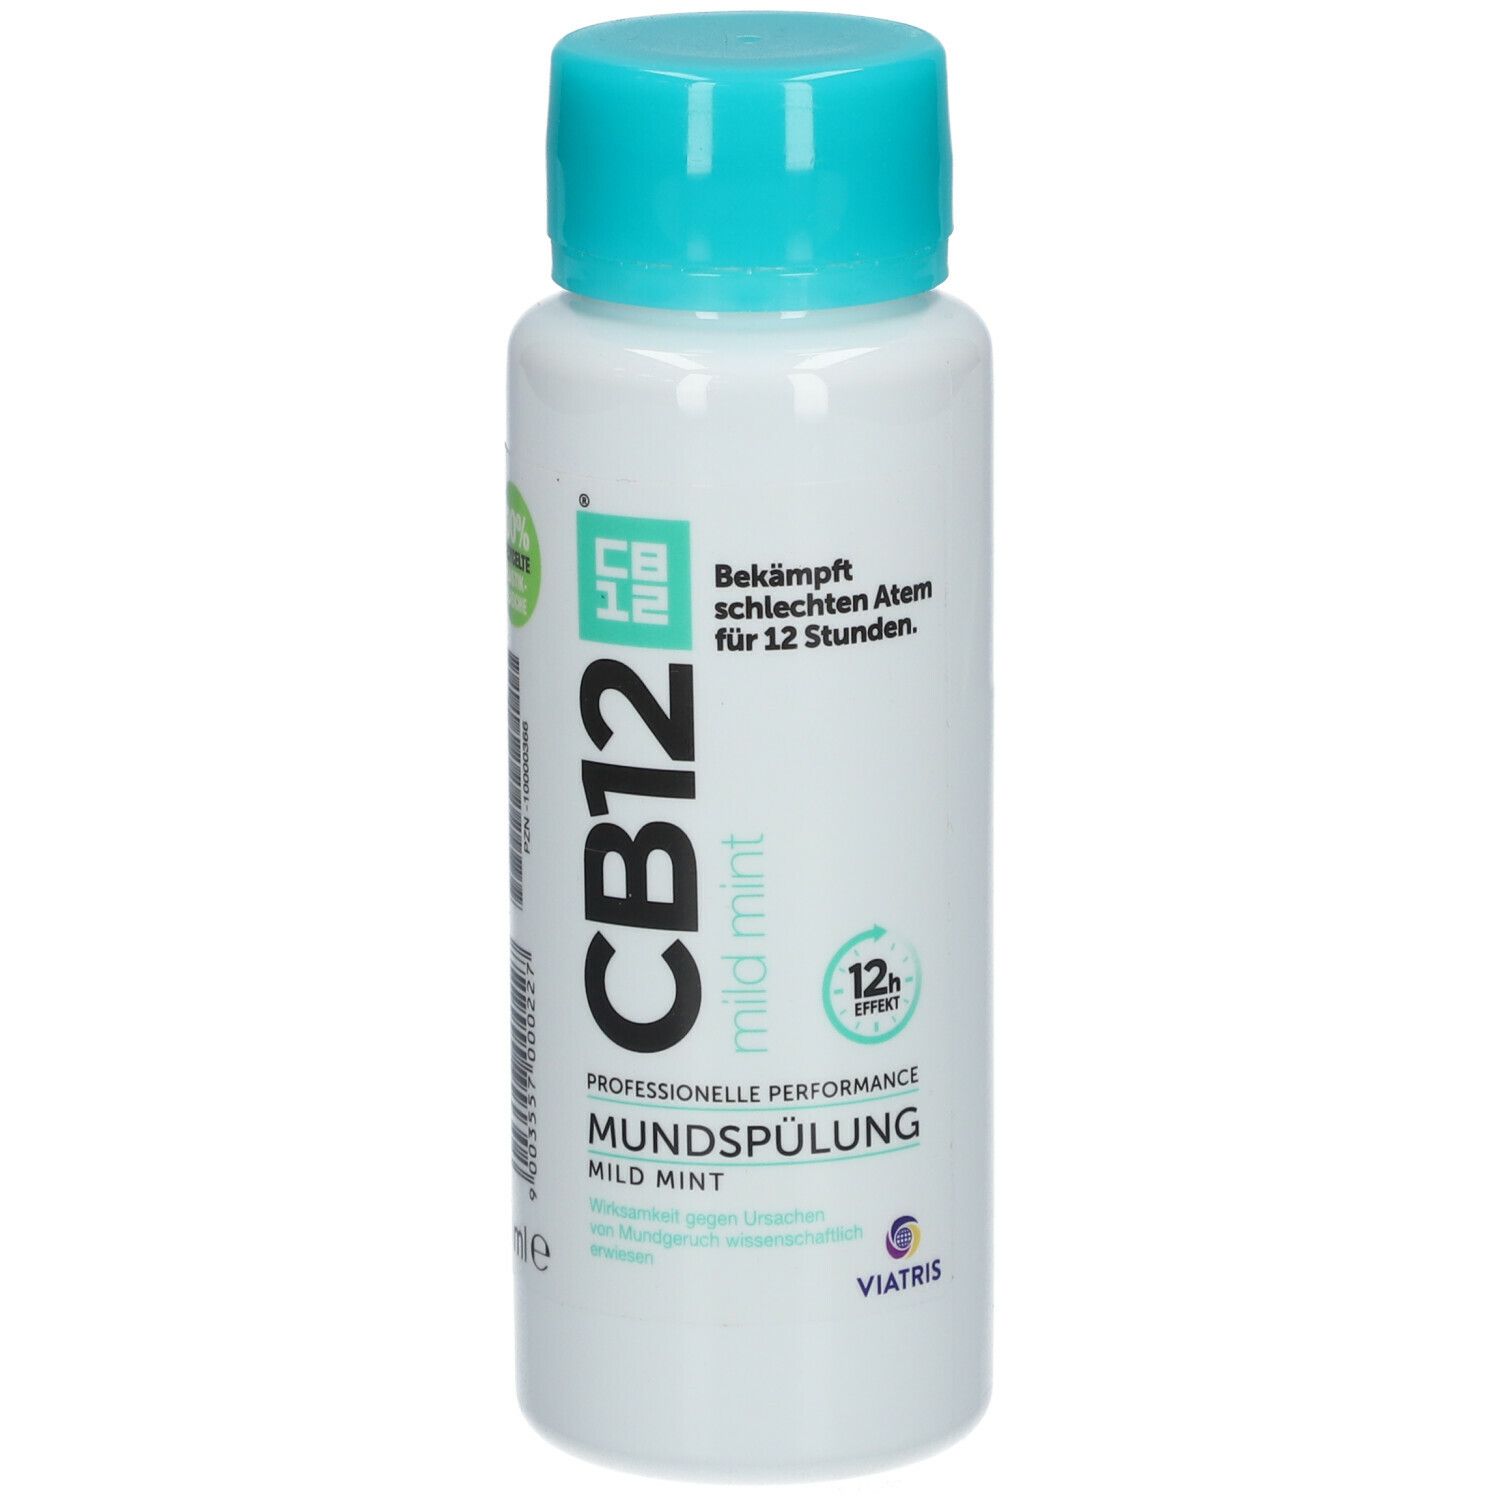 CB12 Mundspülung Mild: Mundwasser mit Zinkacetat & Chlorhexidin, gegen schlechten Atem & Mundgeruch